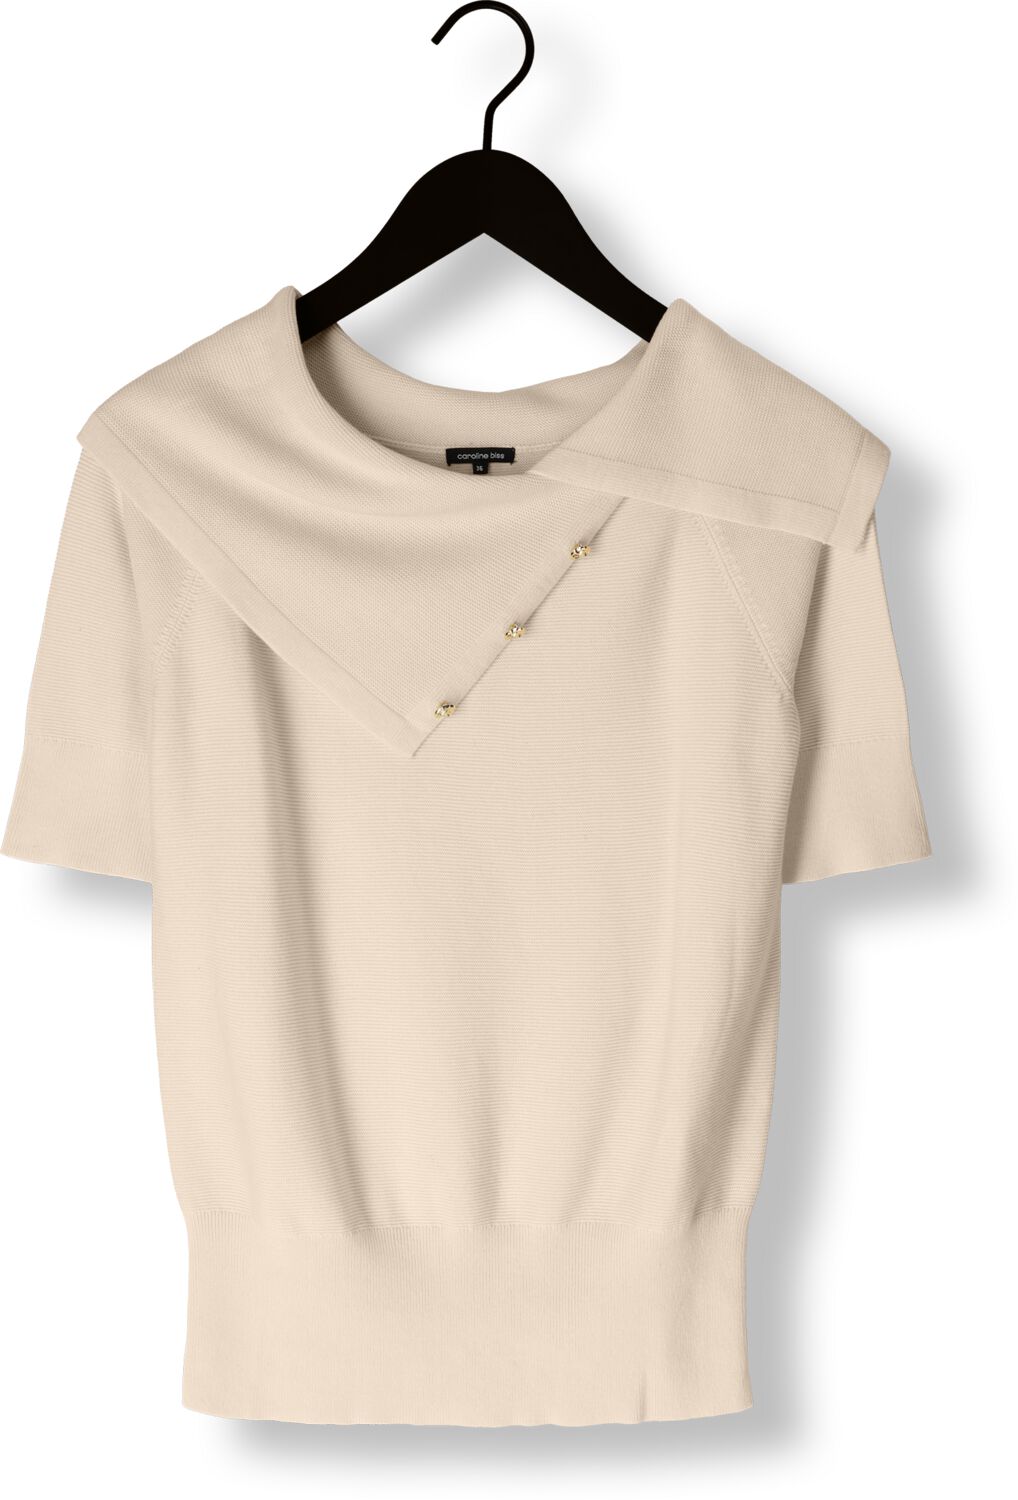 CAROLINE BISS Dames Tops & T-shirts 1245 34 Creme